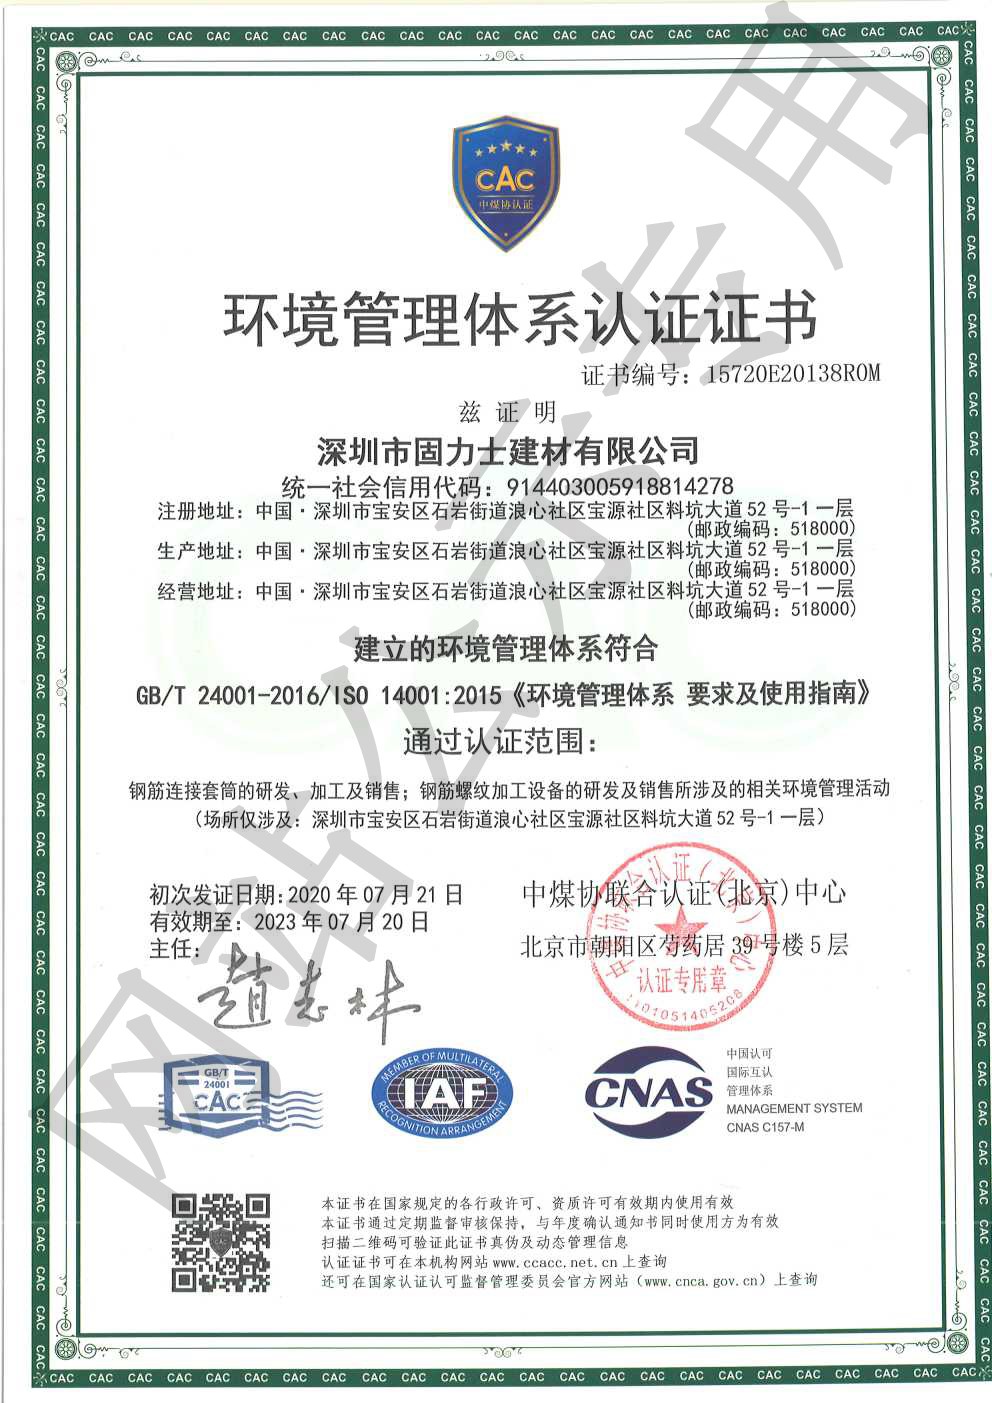 都兰ISO14001证书